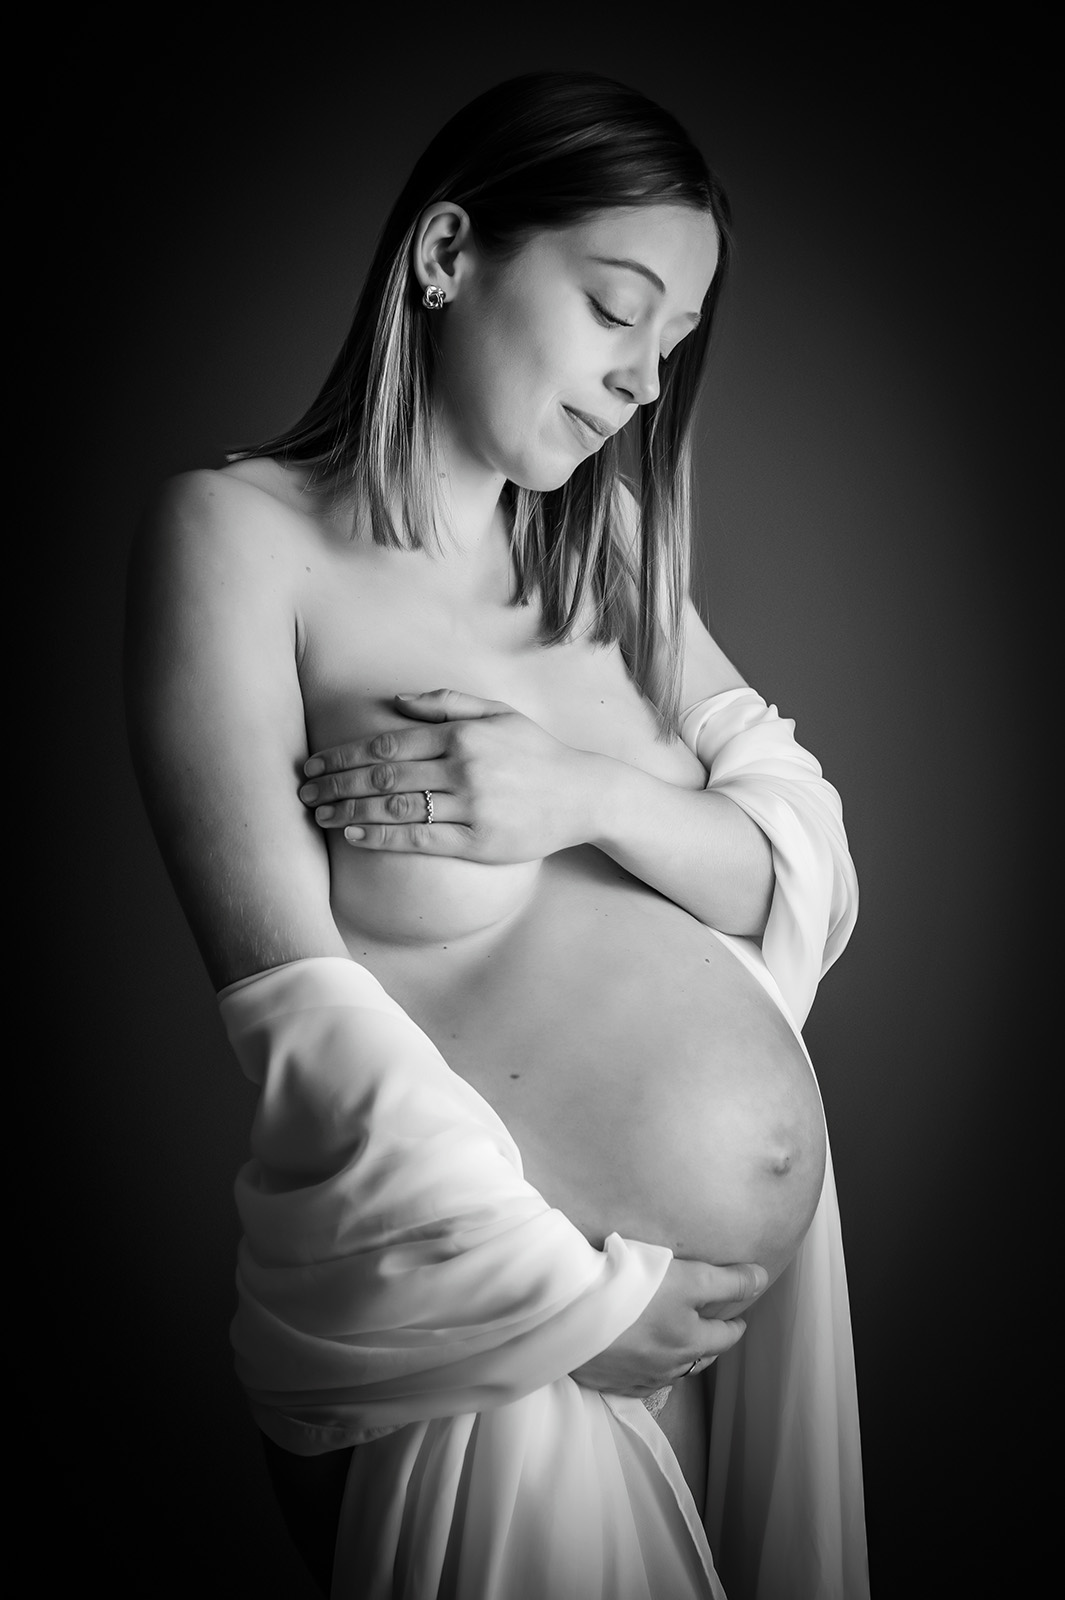 photo noir et blanc d'une femme enceinte habillée d'un voile blanc sur les coudes et se cachant la poitrine avec les mains